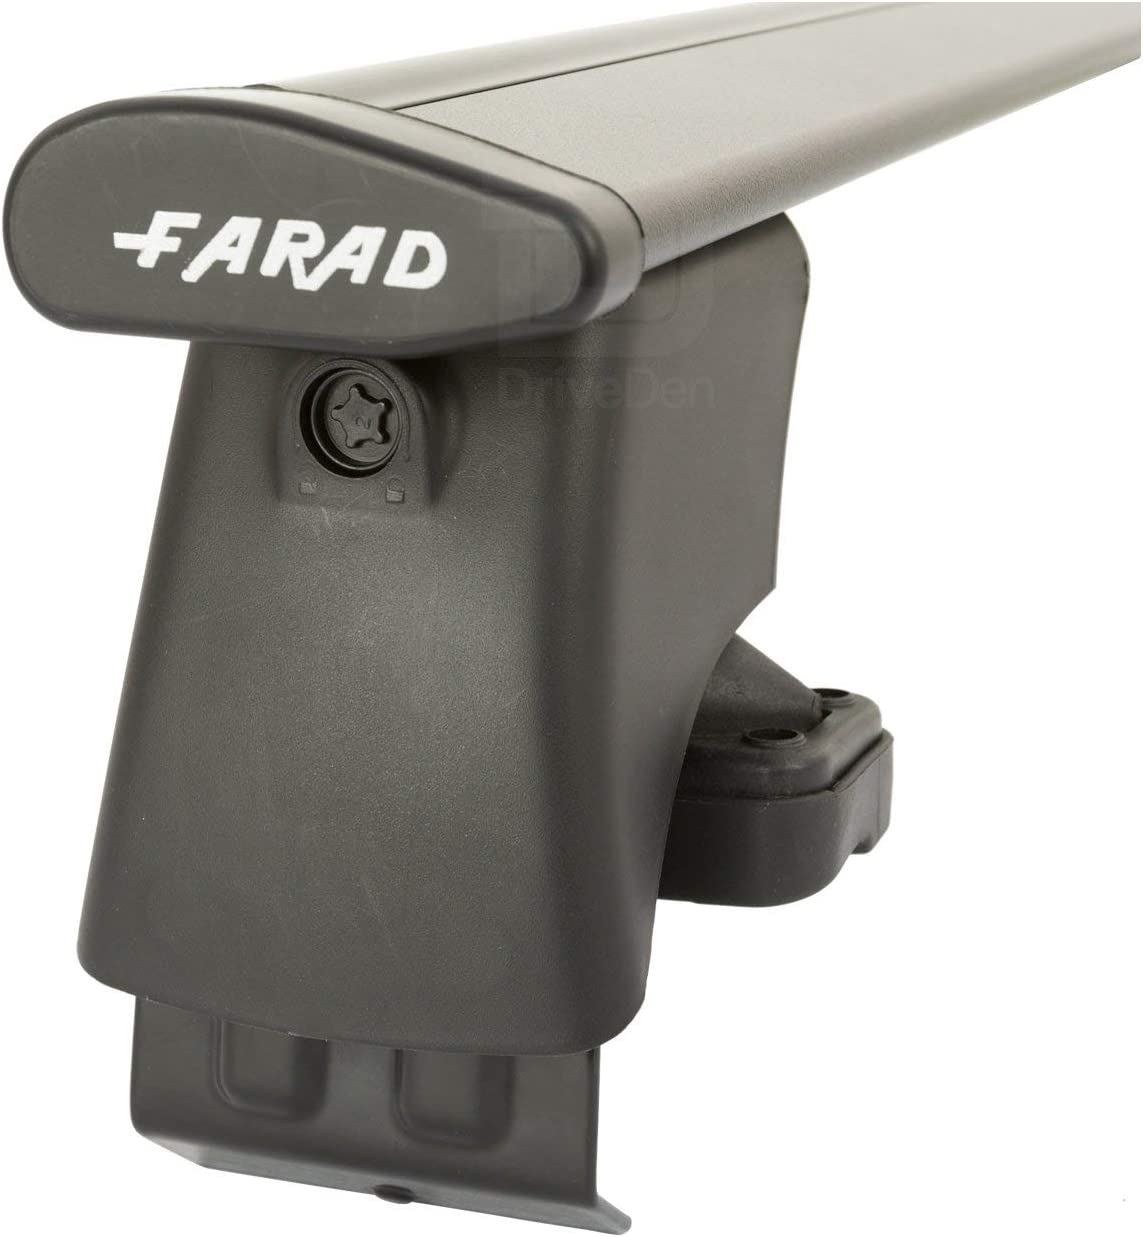 FARAD-Kit H2 per barre portatutto - Ssangyong Tivoli 2015> (senza corrimano)